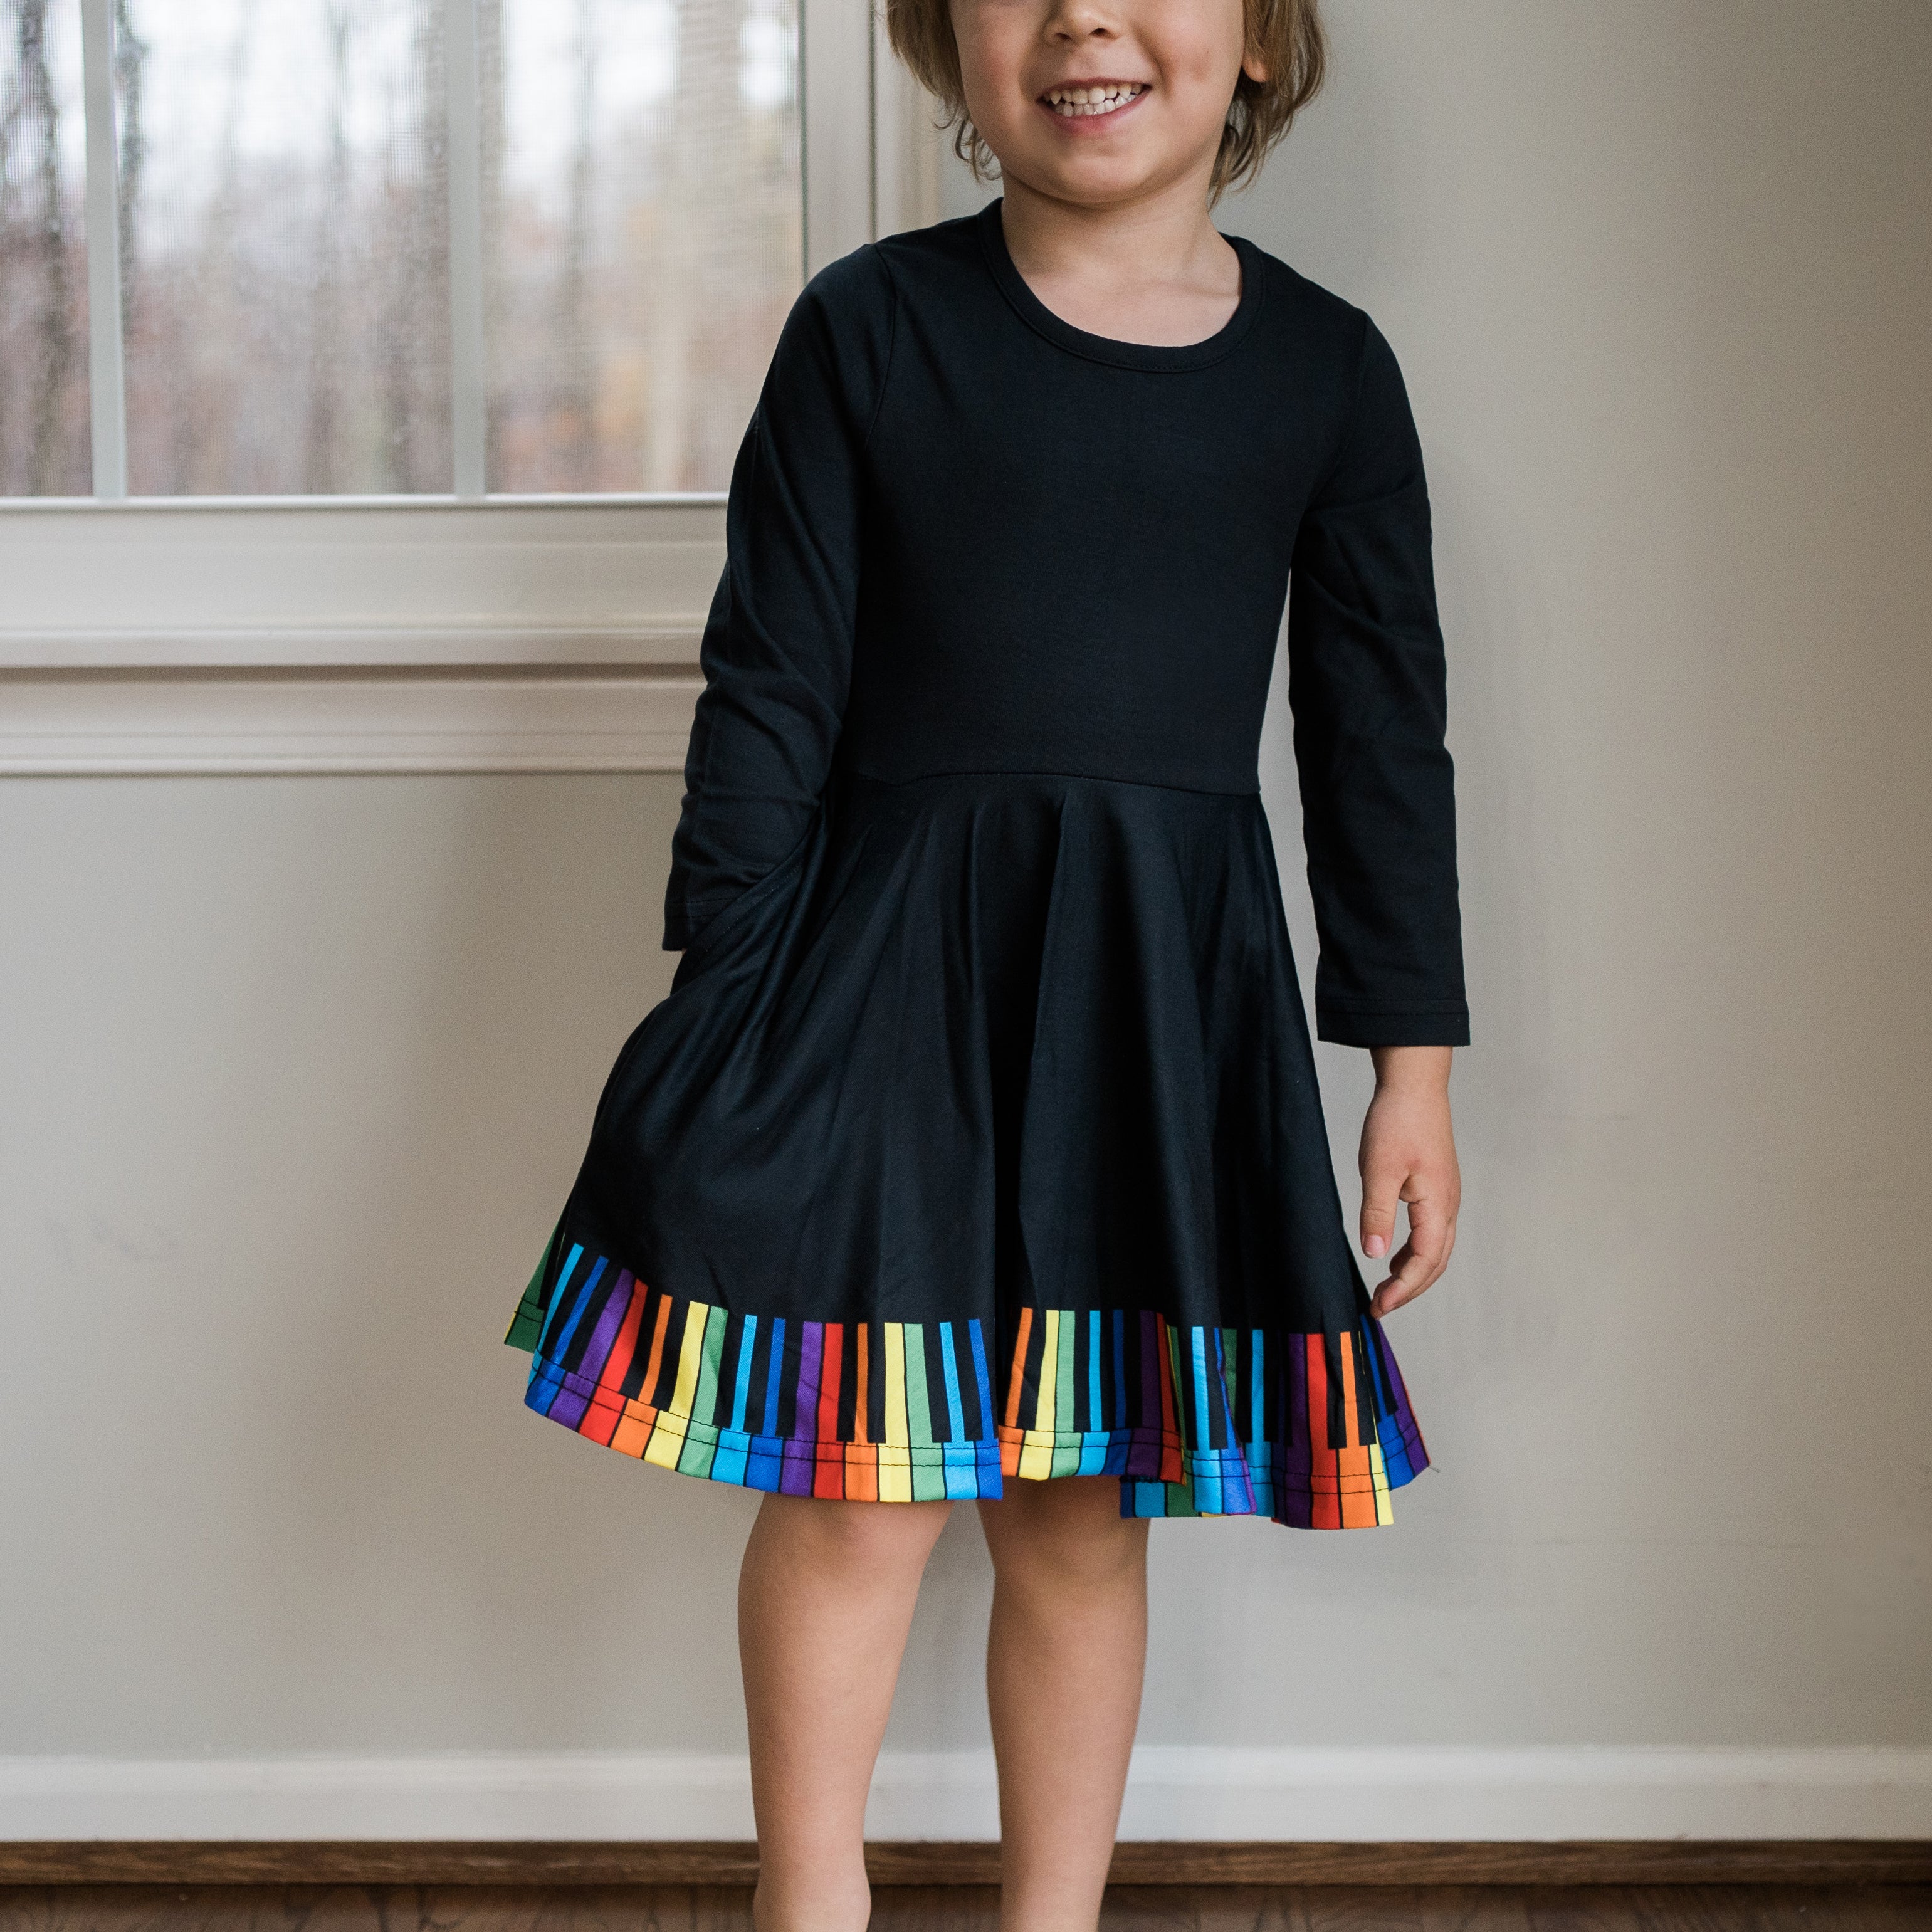 Chromatic Scales Kids Twirl Dress